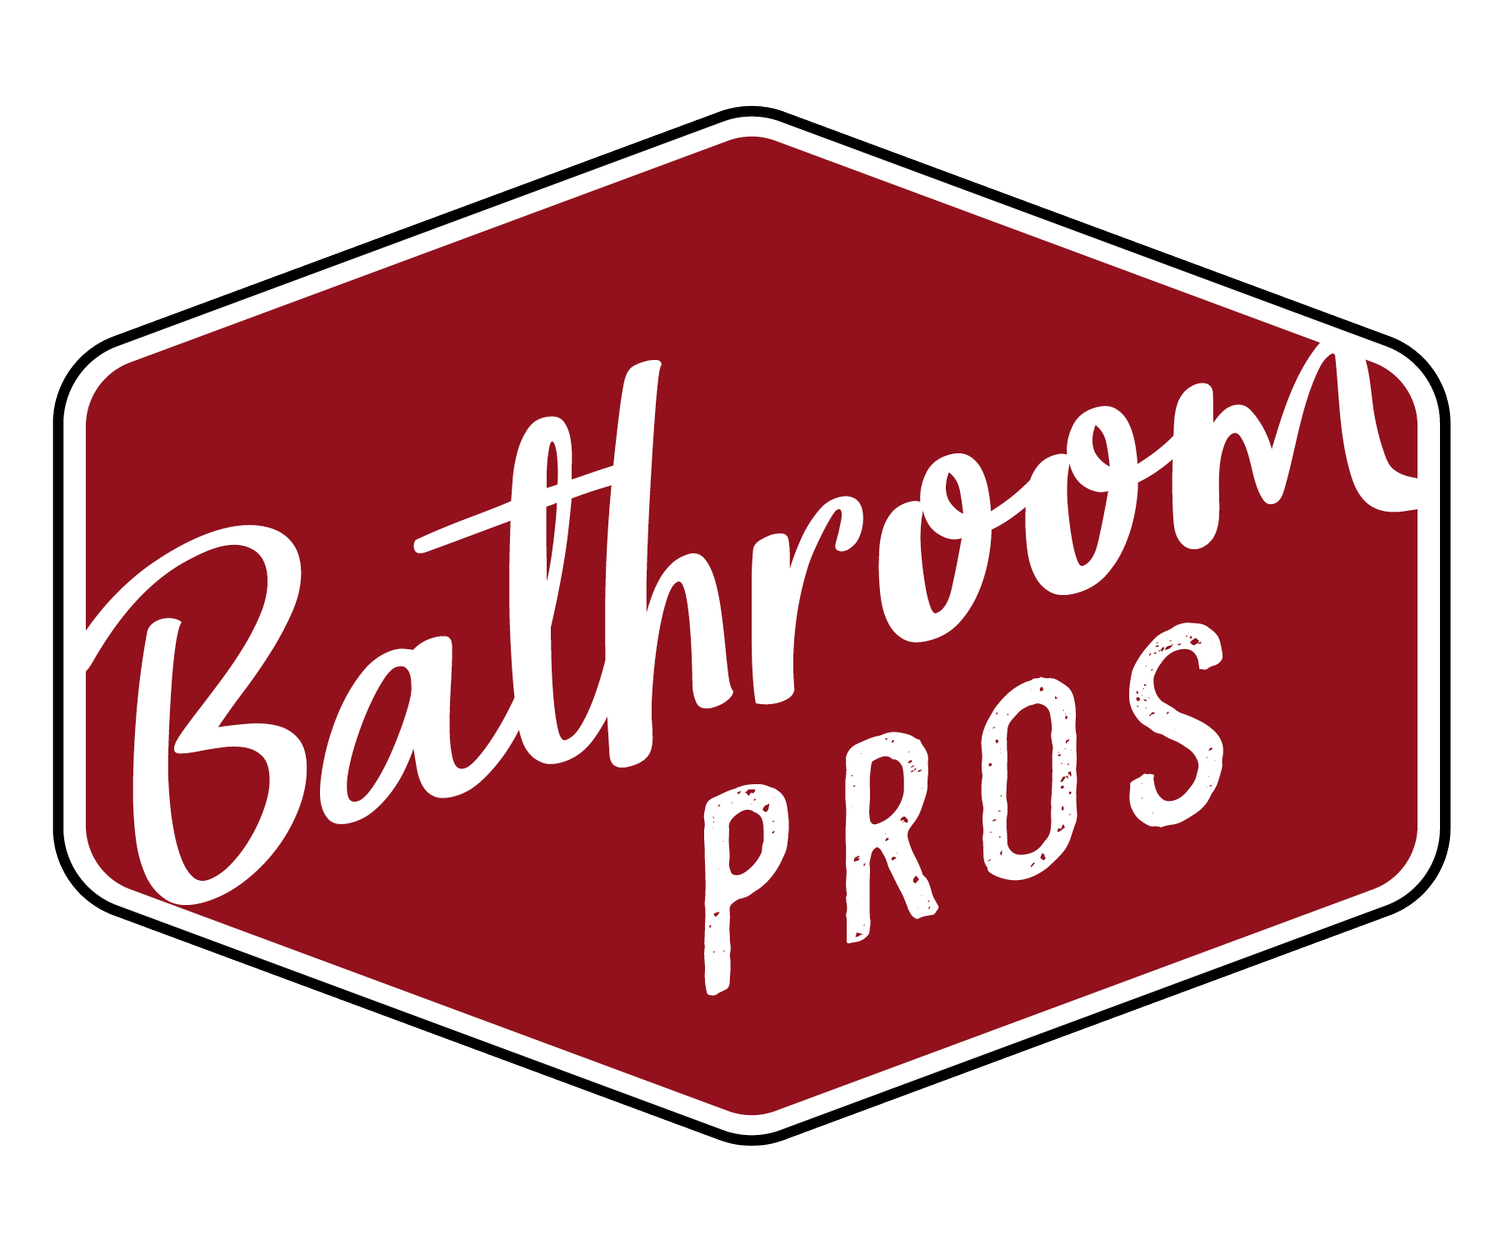 Bathroom Pros